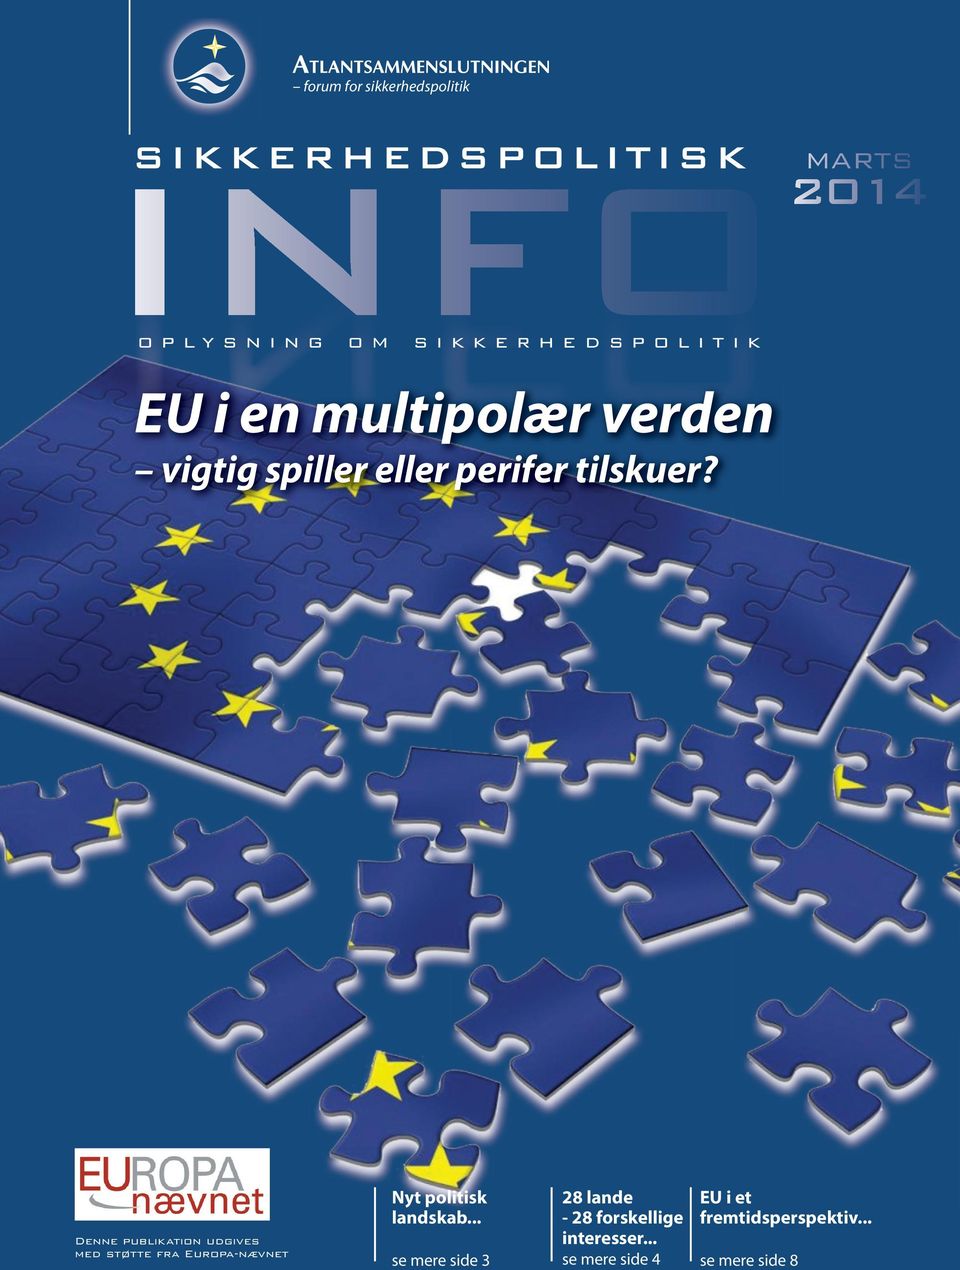 Denne publikation udgives med støtte fra Europa-nævnet Nyt politisk landskab.